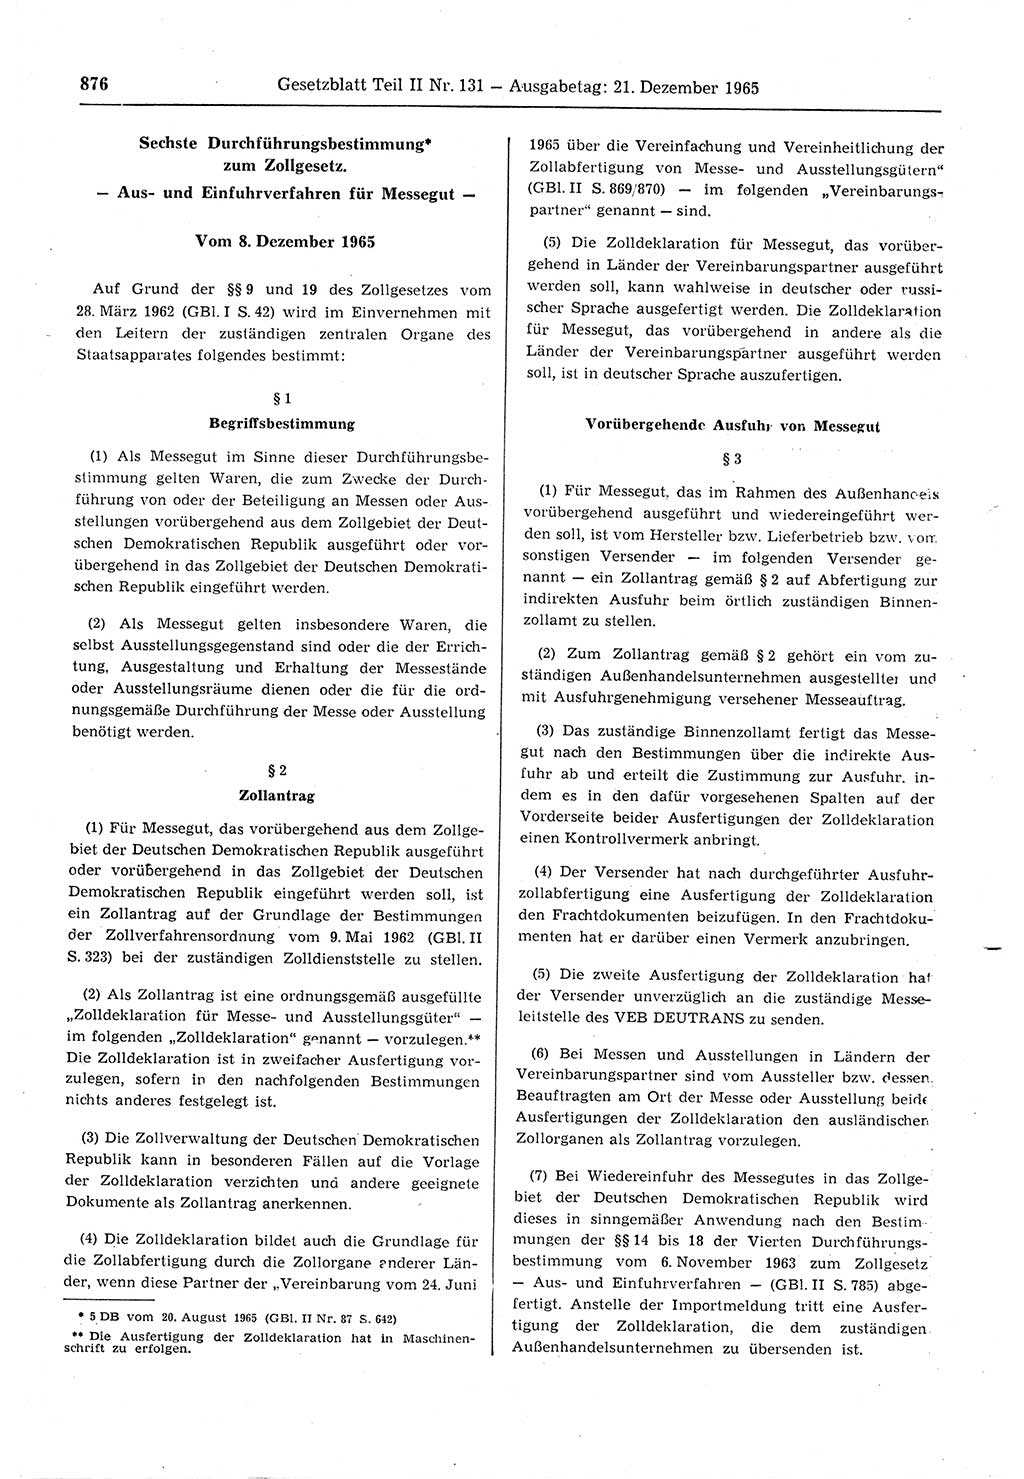 Gesetzblatt (GBl.) der Deutschen Demokratischen Republik (DDR) Teil ⅠⅠ 1965, Seite 876 (GBl. DDR ⅠⅠ 1965, S. 876)